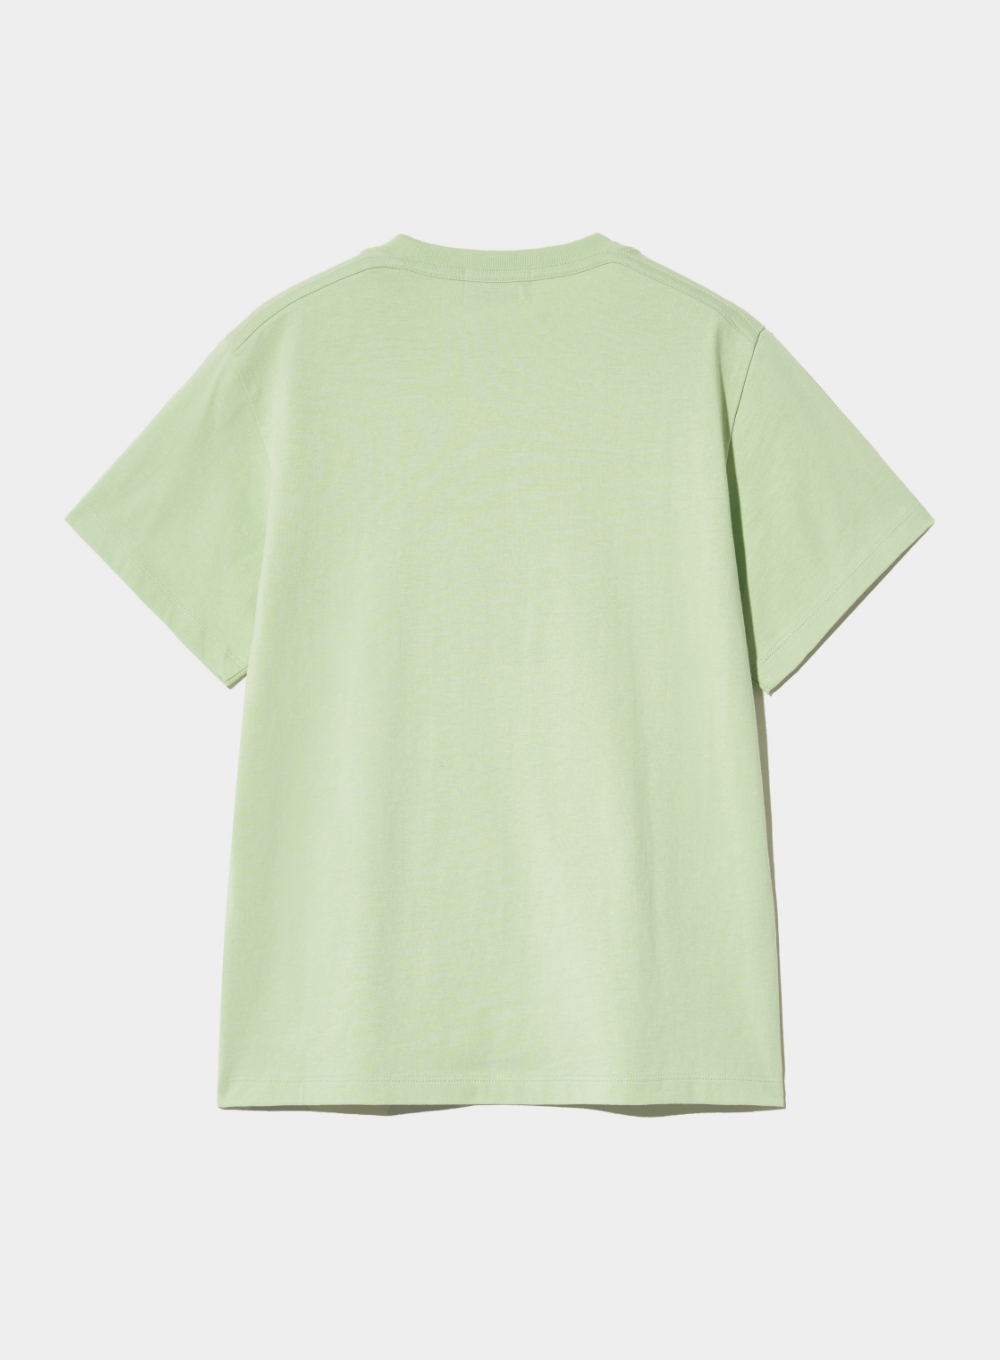 [5월 14일 예약배송] (W) Banana Tree Graphic T-Shirt - Celadon Mint